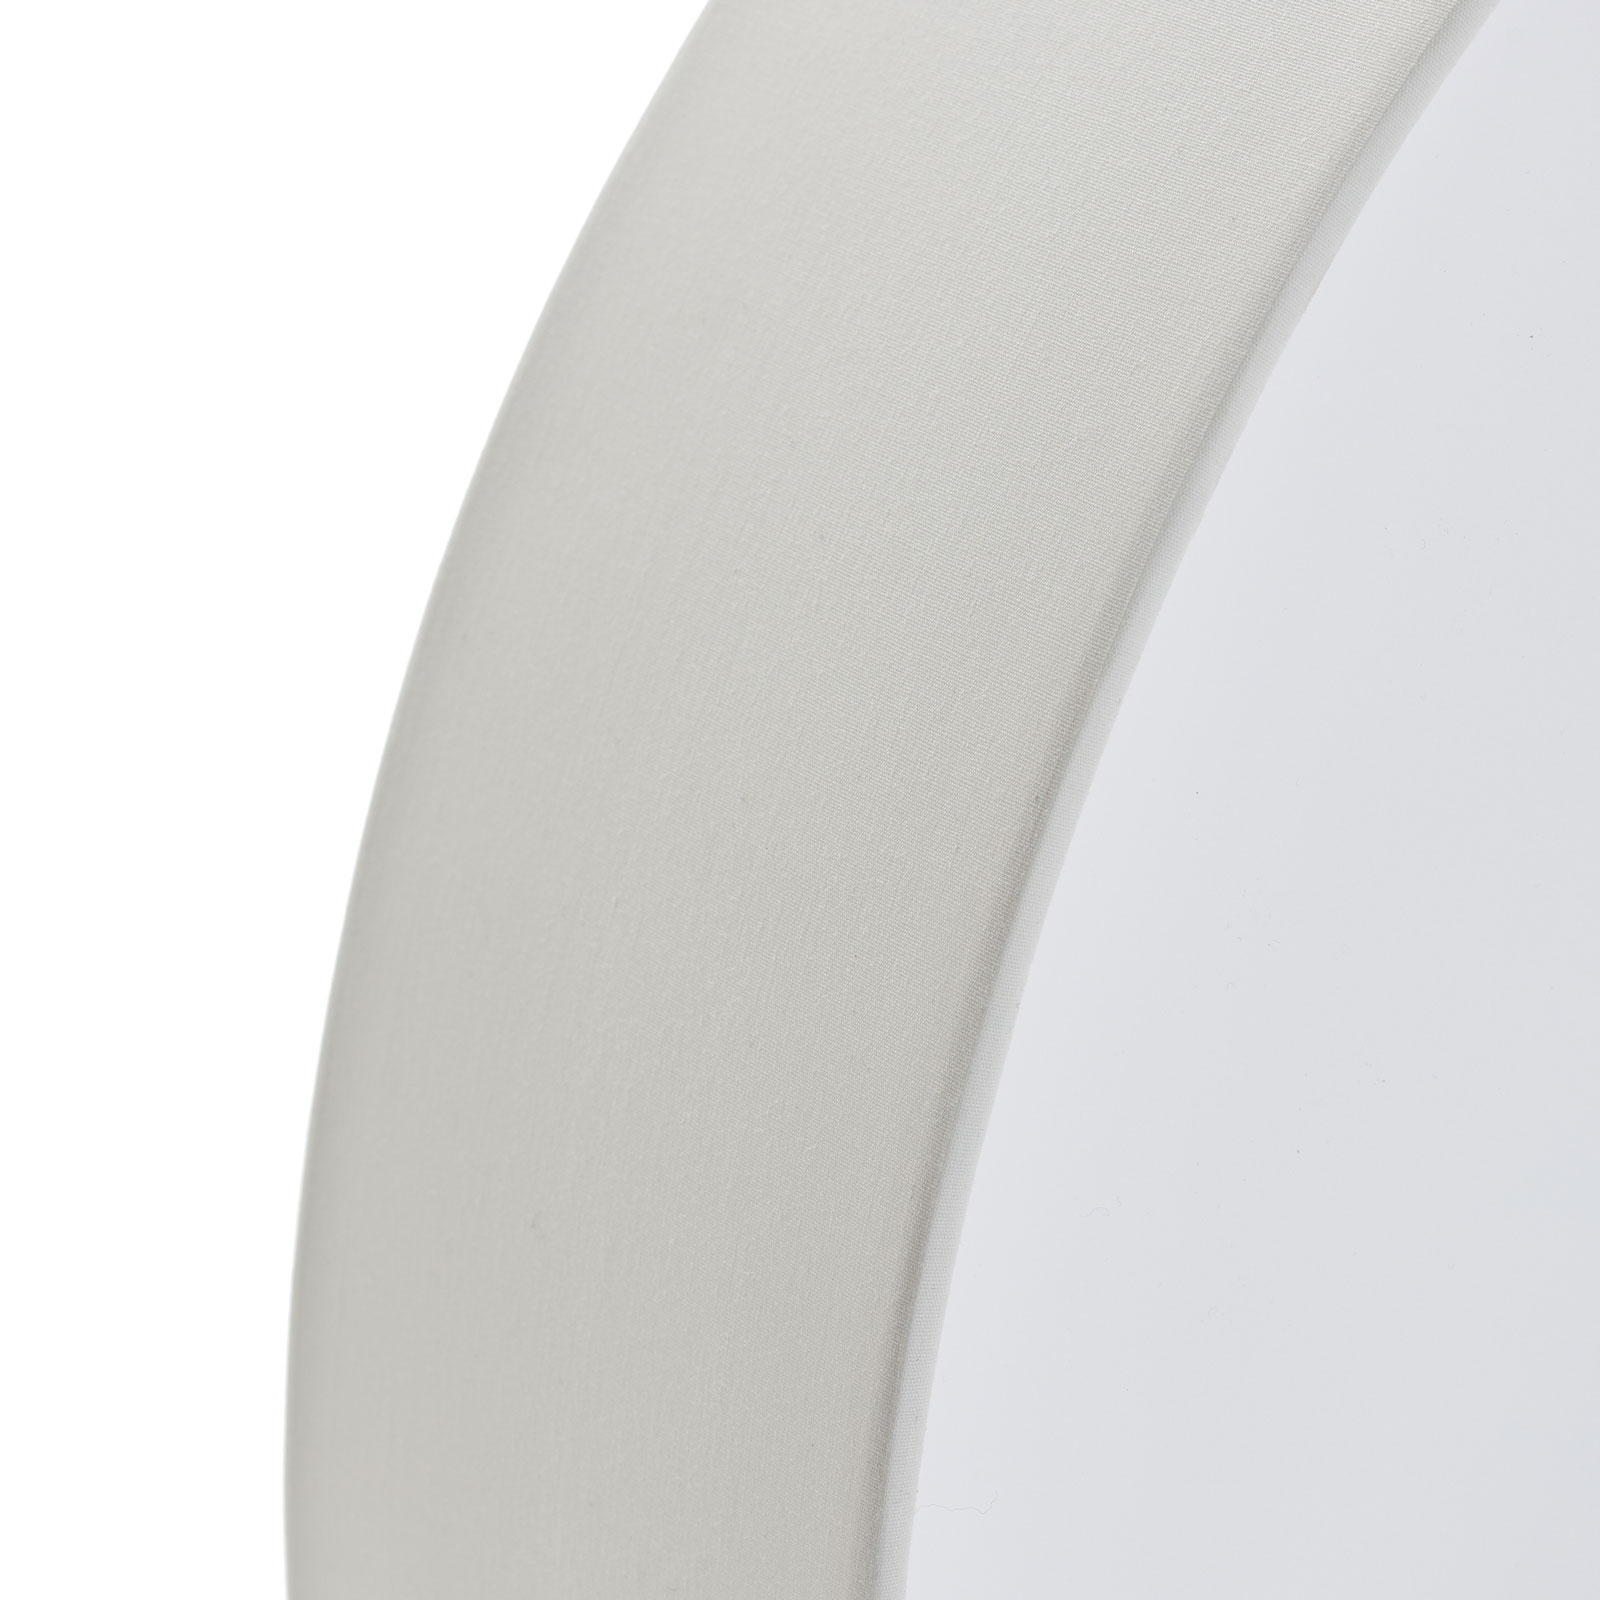 Pasteri ceiling lamp, white, 57 cm